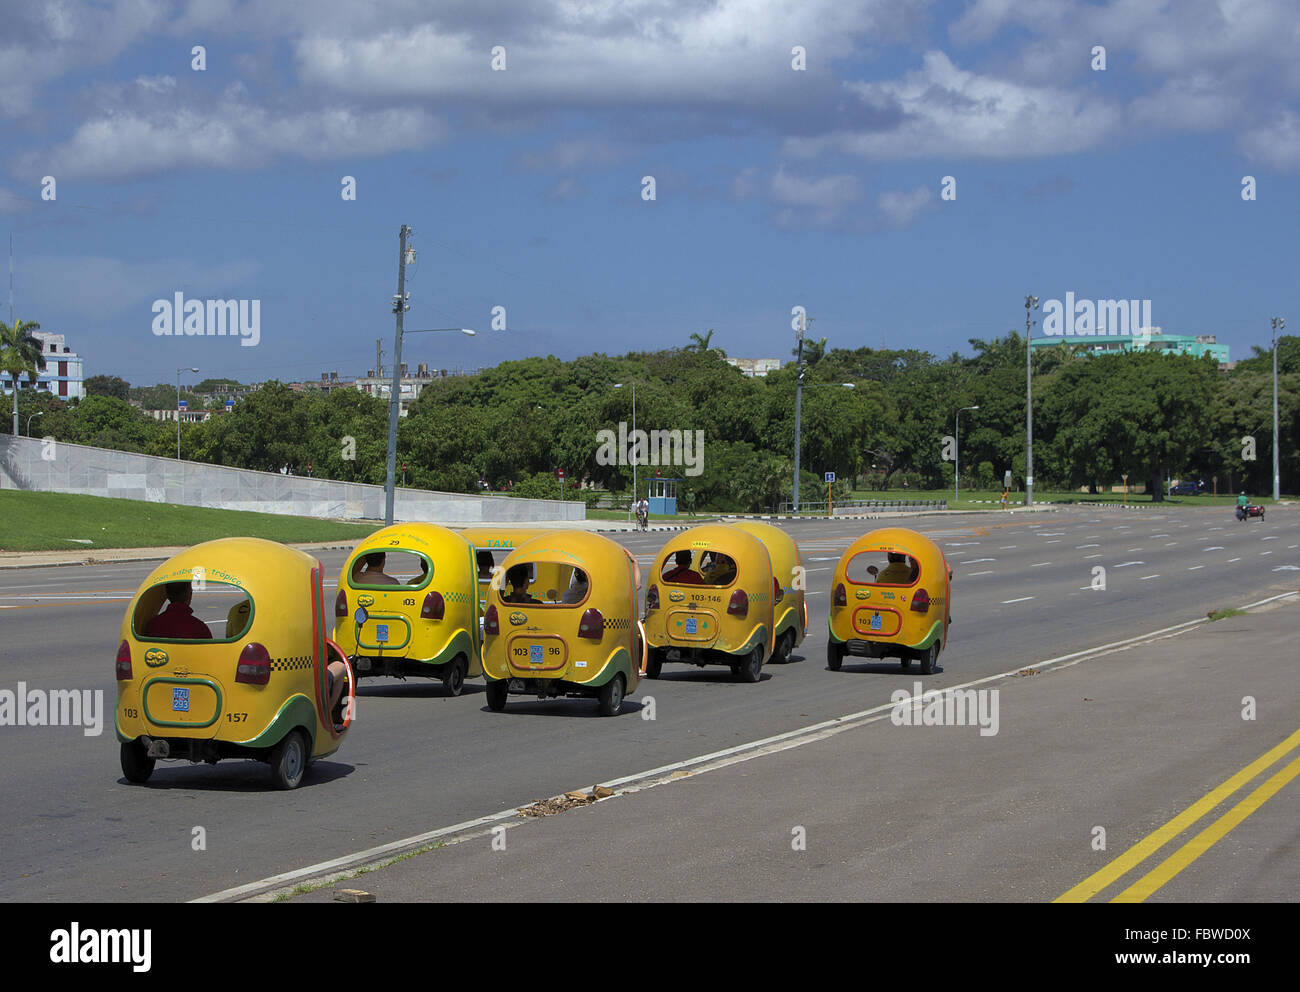 Cuba coco taxi Stock Photo